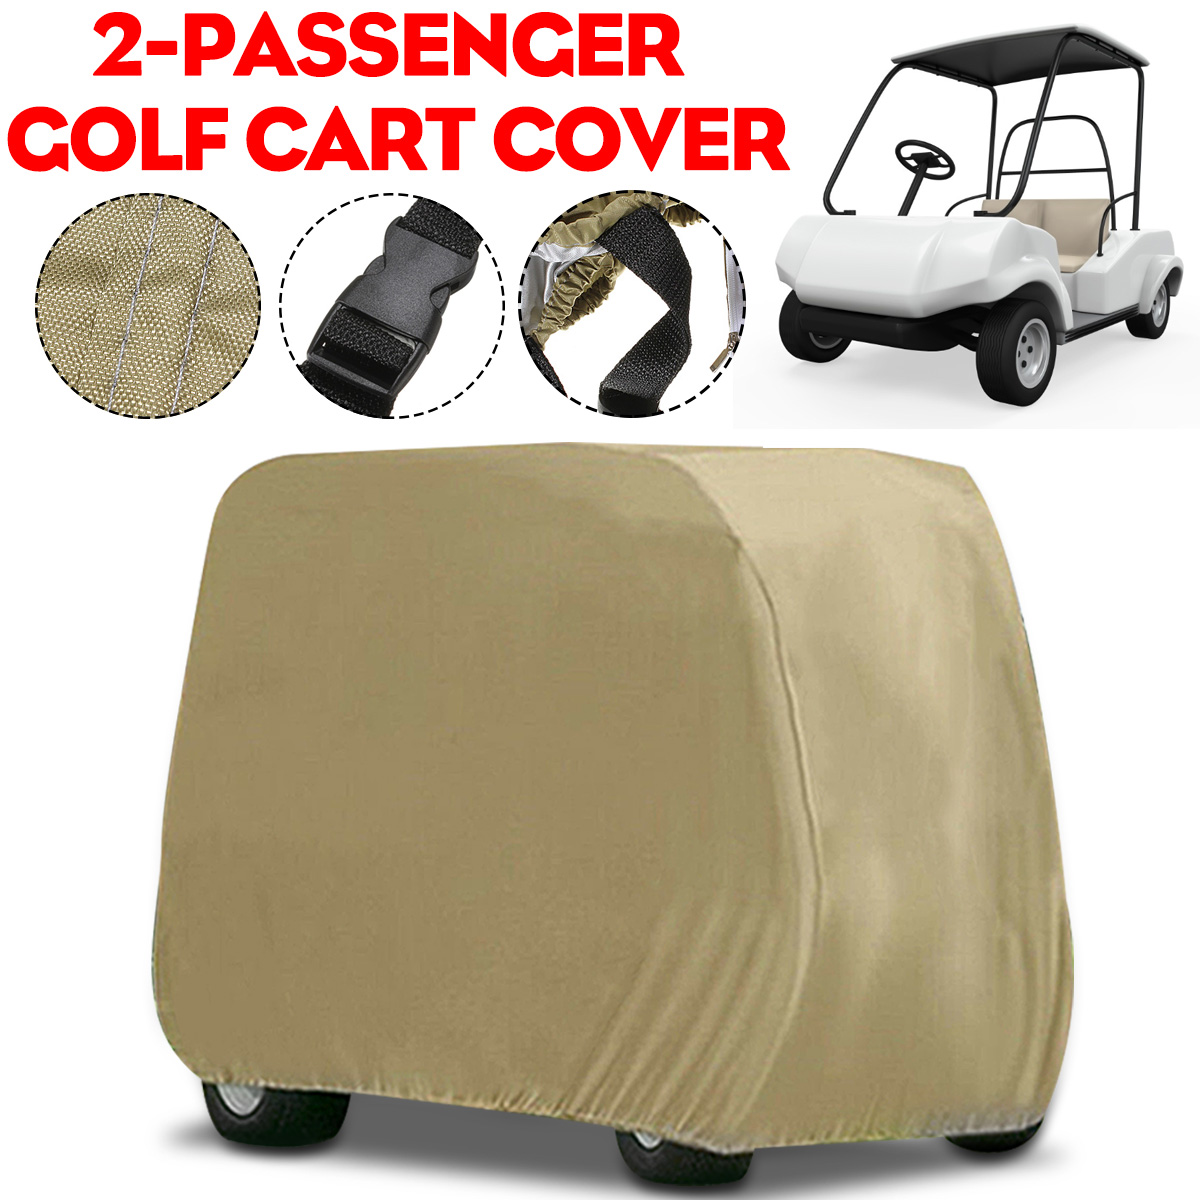 95 "X 48" X 66 "Waterdichte Golfkar Cover 2 Passagiers Golfkar Bescherm Cover Uv-bestendig sunshide Regenhoes